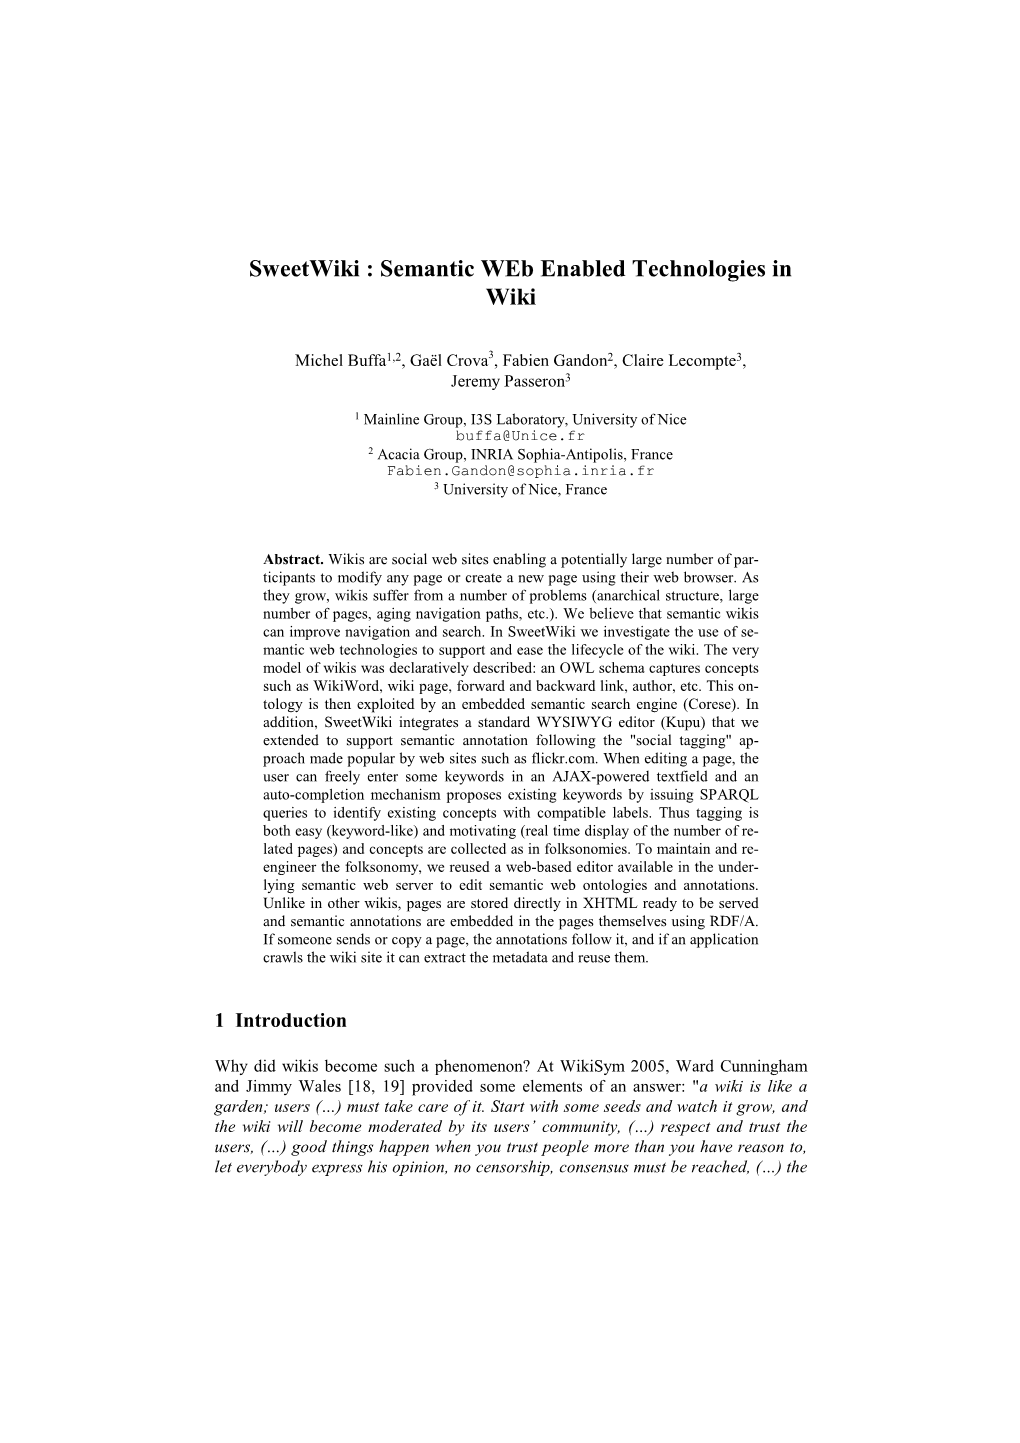 Sweetwiki : Semantic Web Enabled Technologies in Wiki